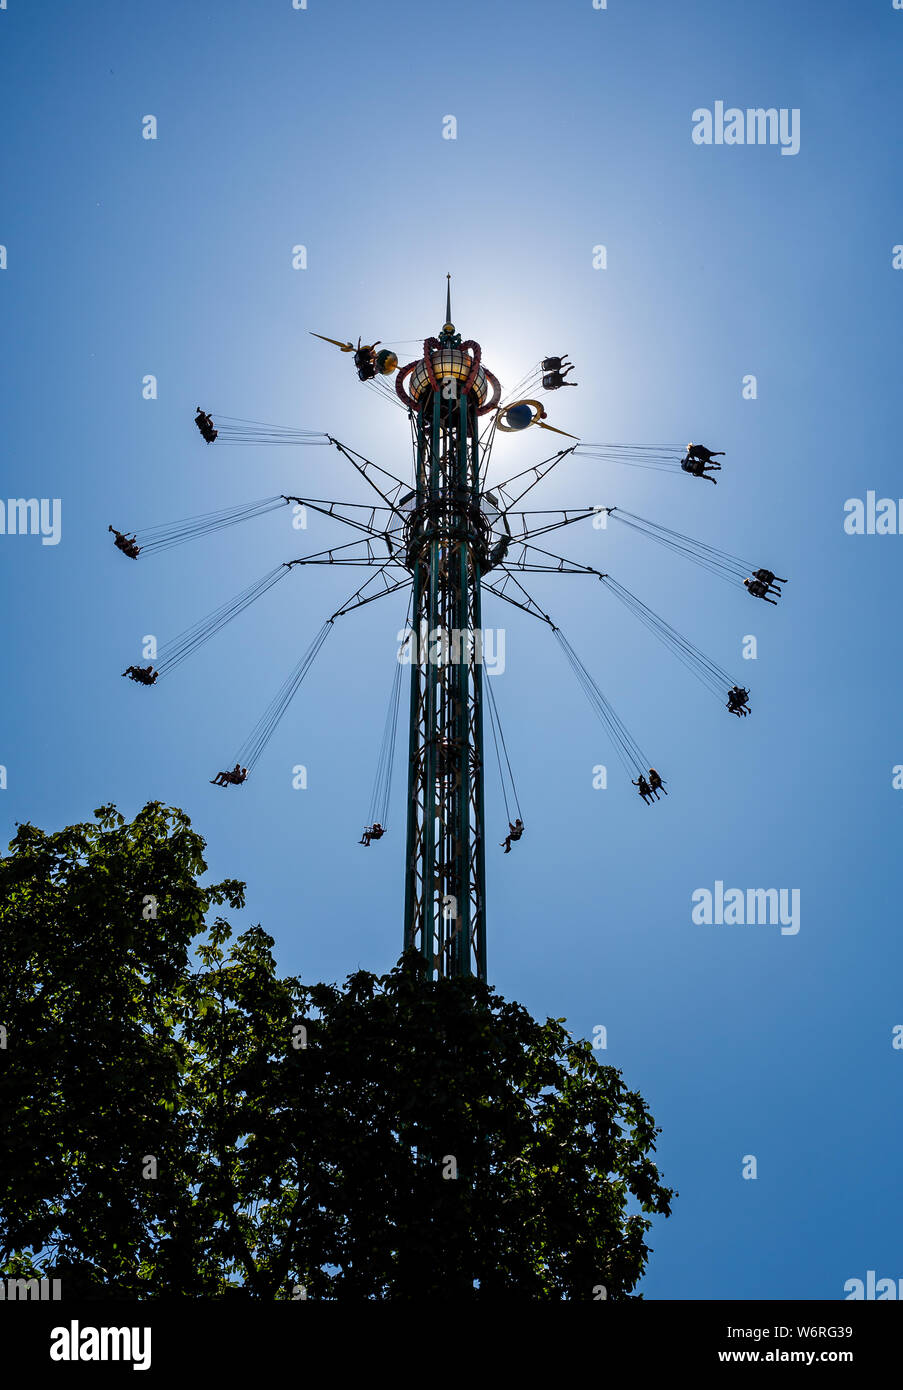 La Star Flyer ride dans le parc attractions des Jardins de Tivoli à Copenhague, Danemark le 18 juillet 2019 Banque D'Images